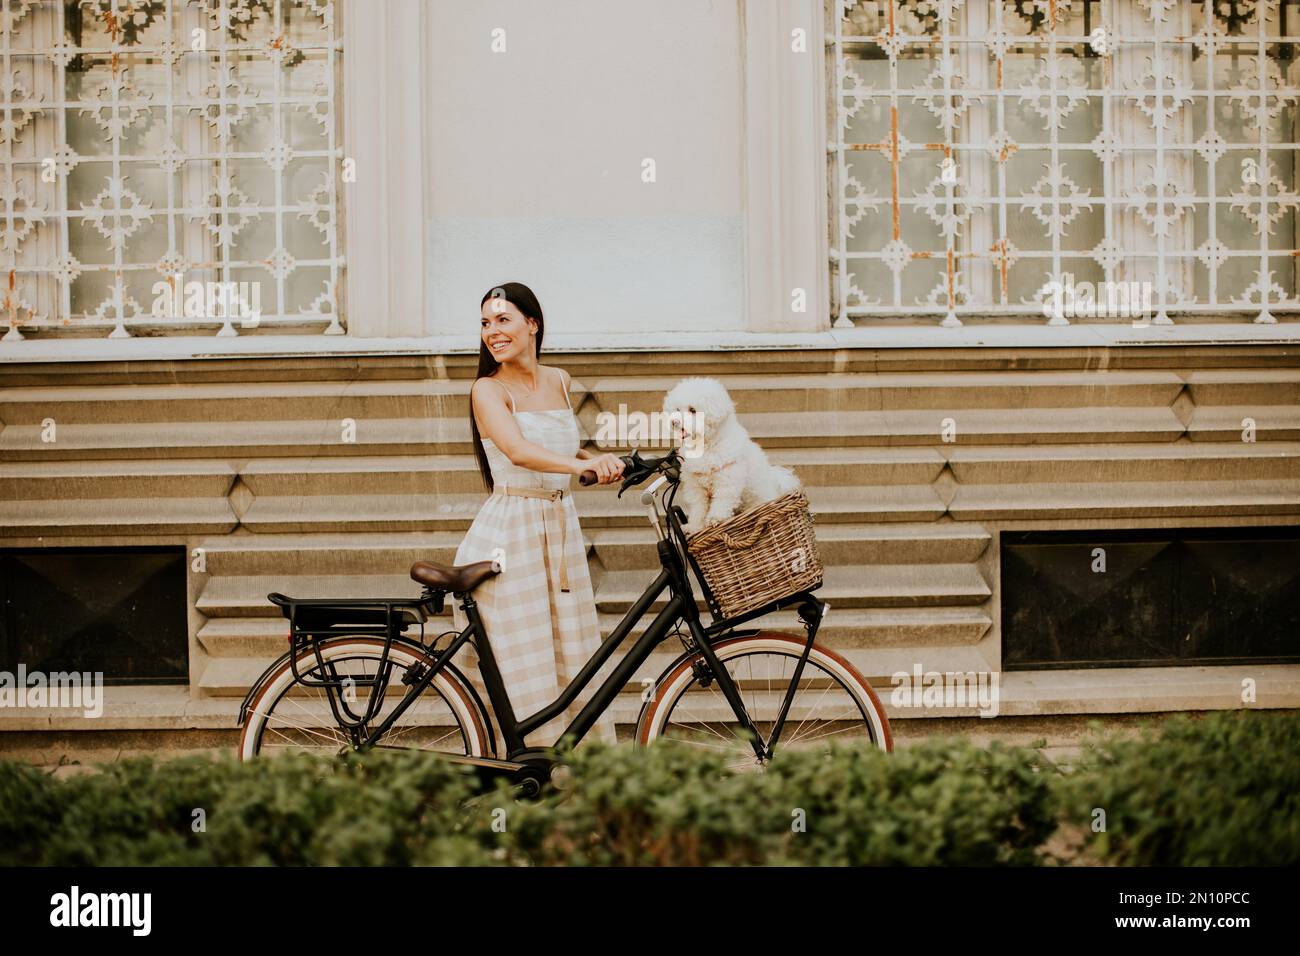 Hübsche junge Frau mit einem bichon-Hund im Fahrradkorb macht eine gemütliche Fahrt Stockfoto